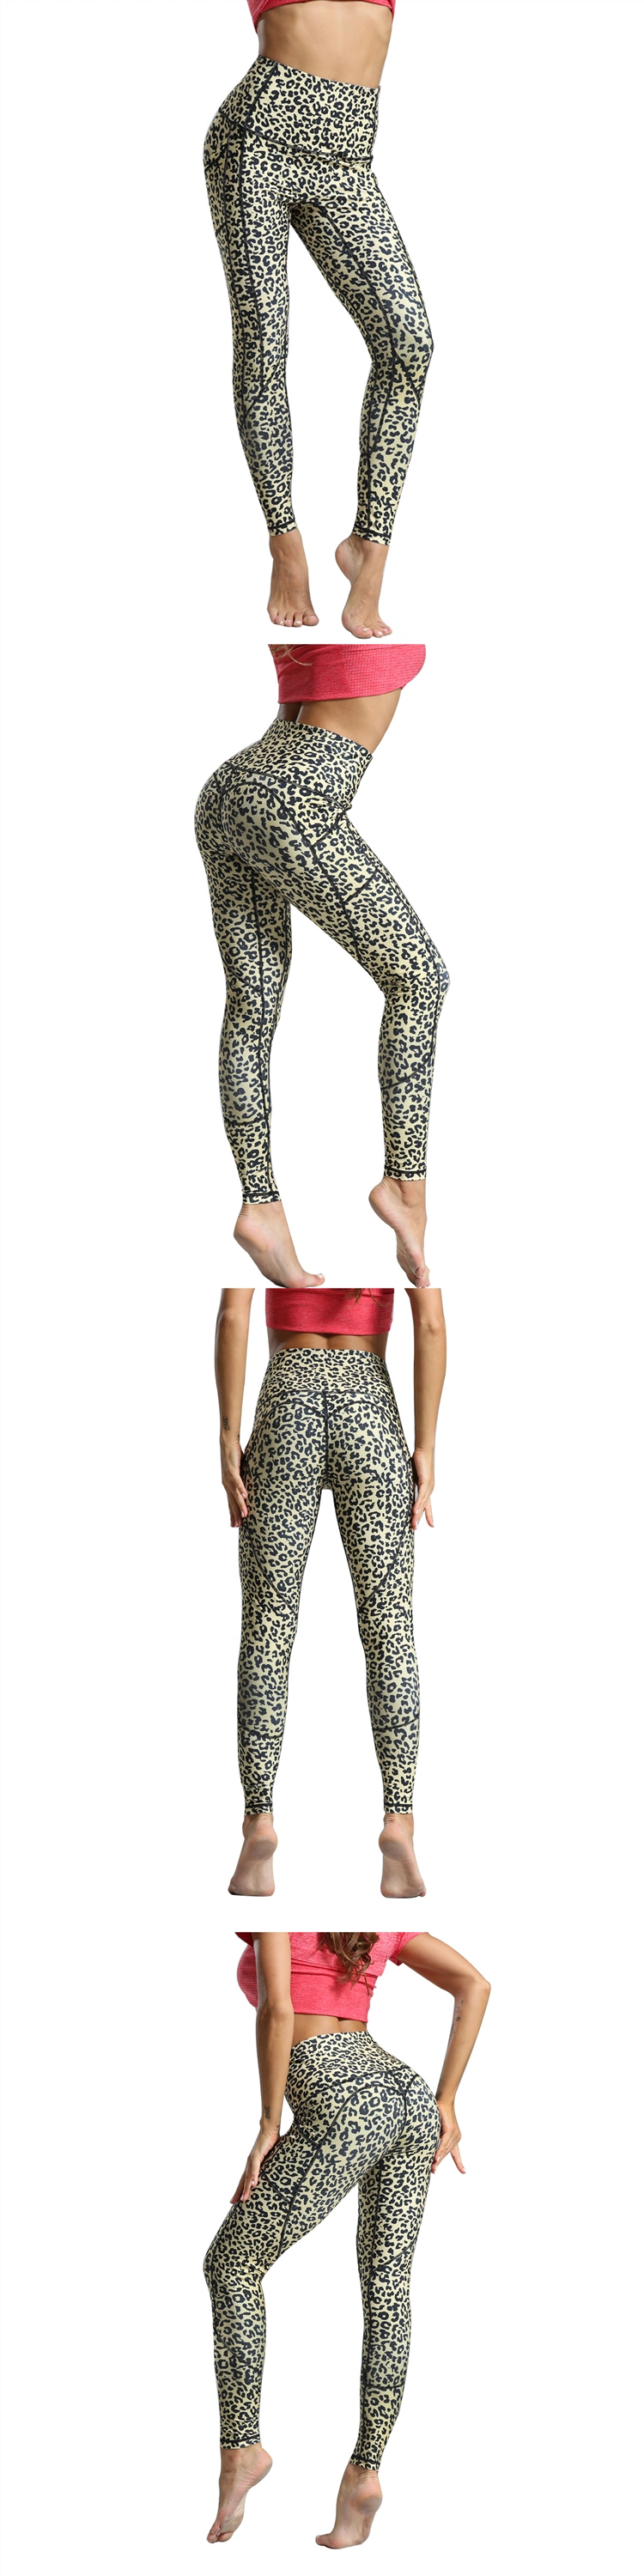 Women Butt Lift Yoga Pants Leopard Print Yoga Leggings Camo Leggings High Waisted Leggings for Women